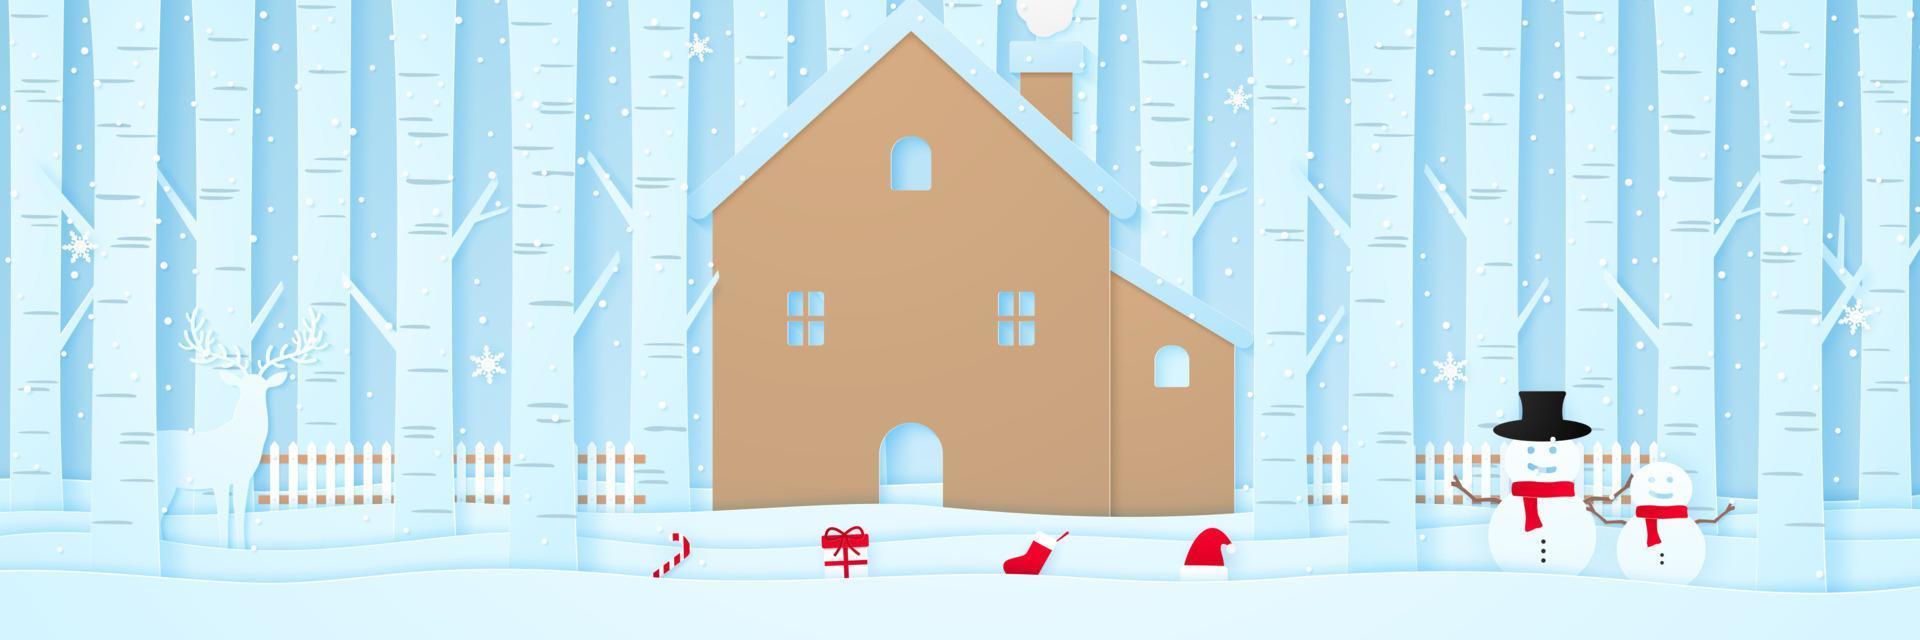 vrolijk kerstfeest, huis met rendieren, sneeuwpop, kerstspullen, hek en pijnbomen op sneeuw in winterlandschap met vallende sneeuw, papierkunststijl vector